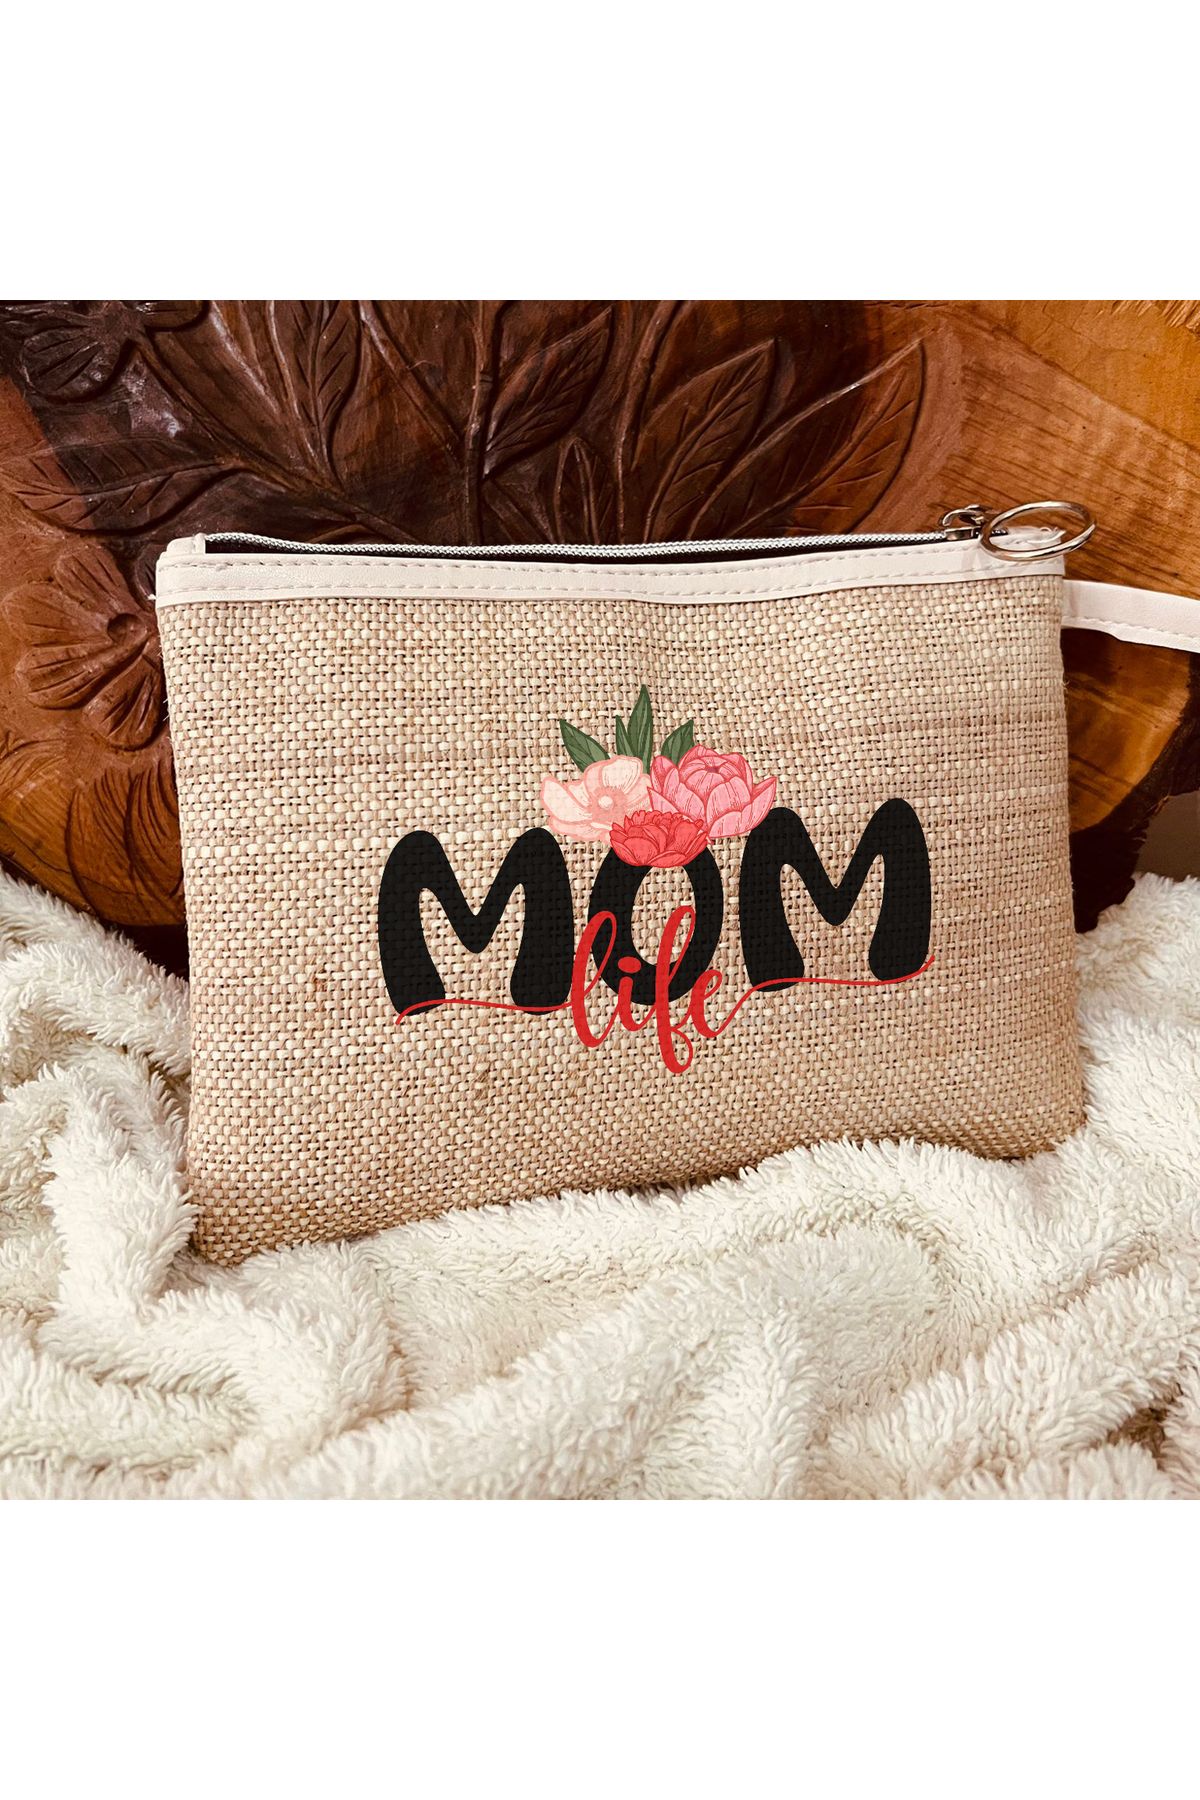 TexKid Anne/Mom Çiçek Tasarımlı 3'lü Matruşka Hediye Clutch/Makyaj/El Çantası